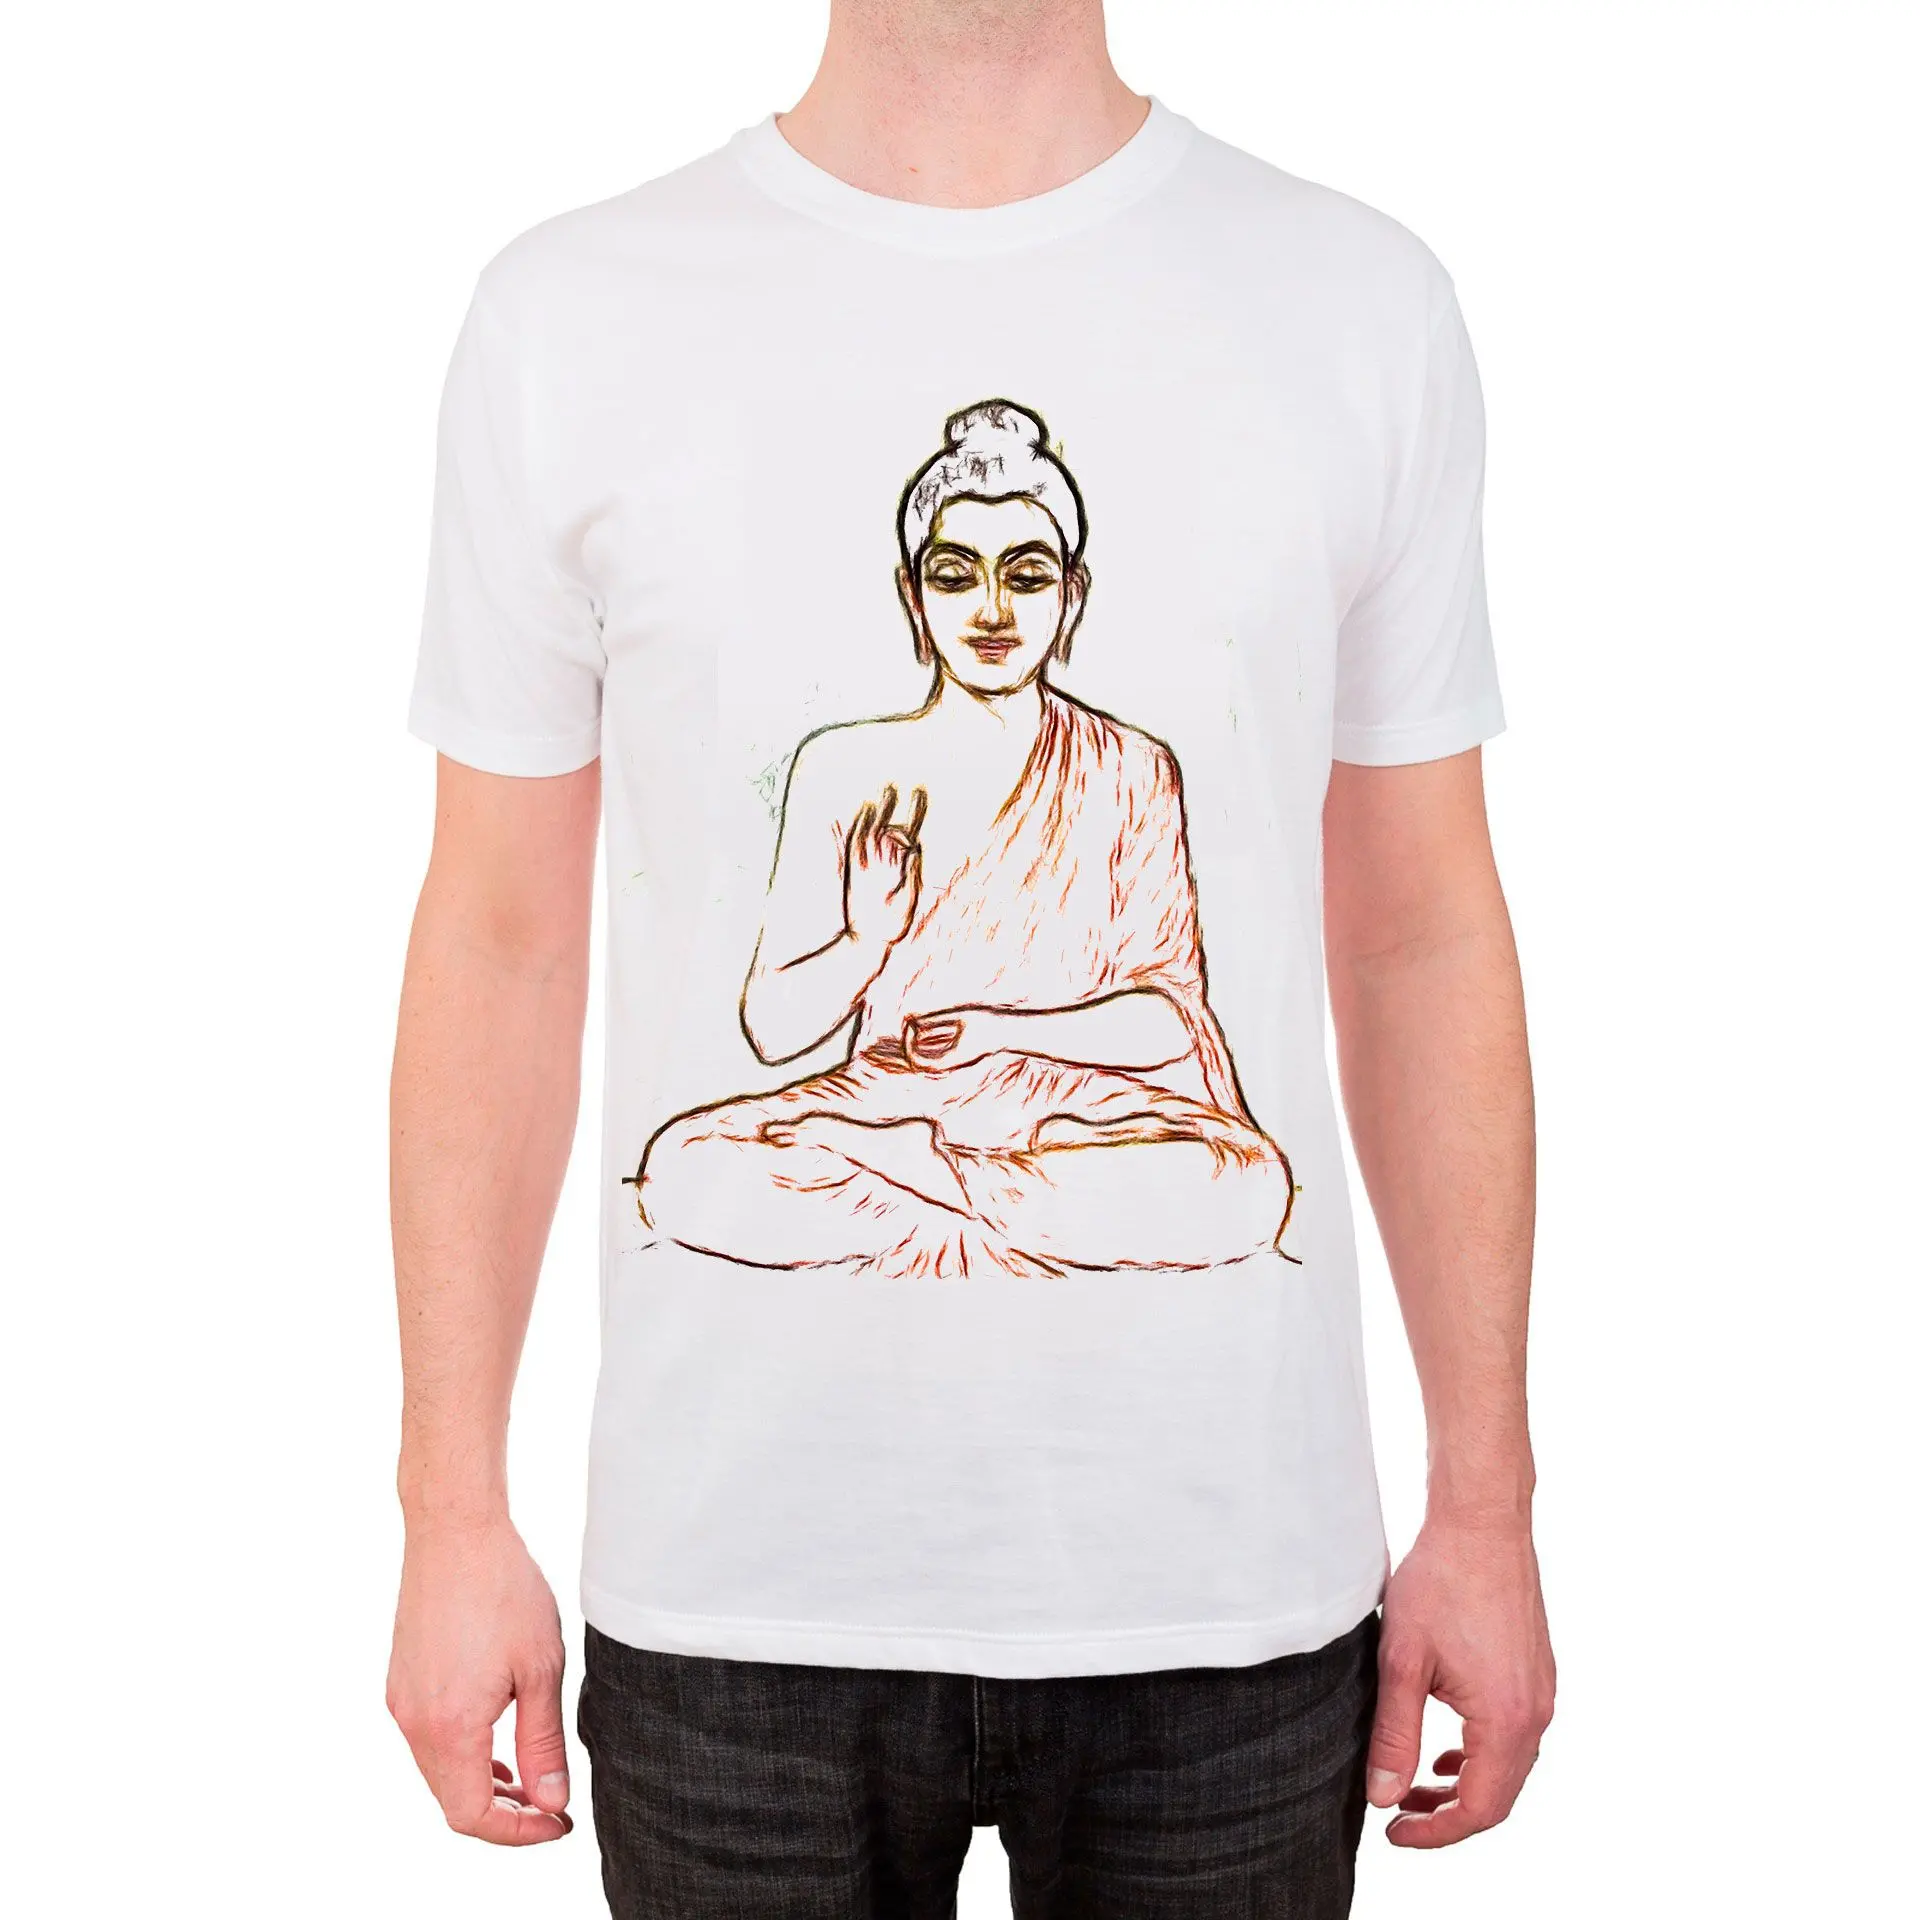 T-shirt med stregtegningsskitse af buddha..